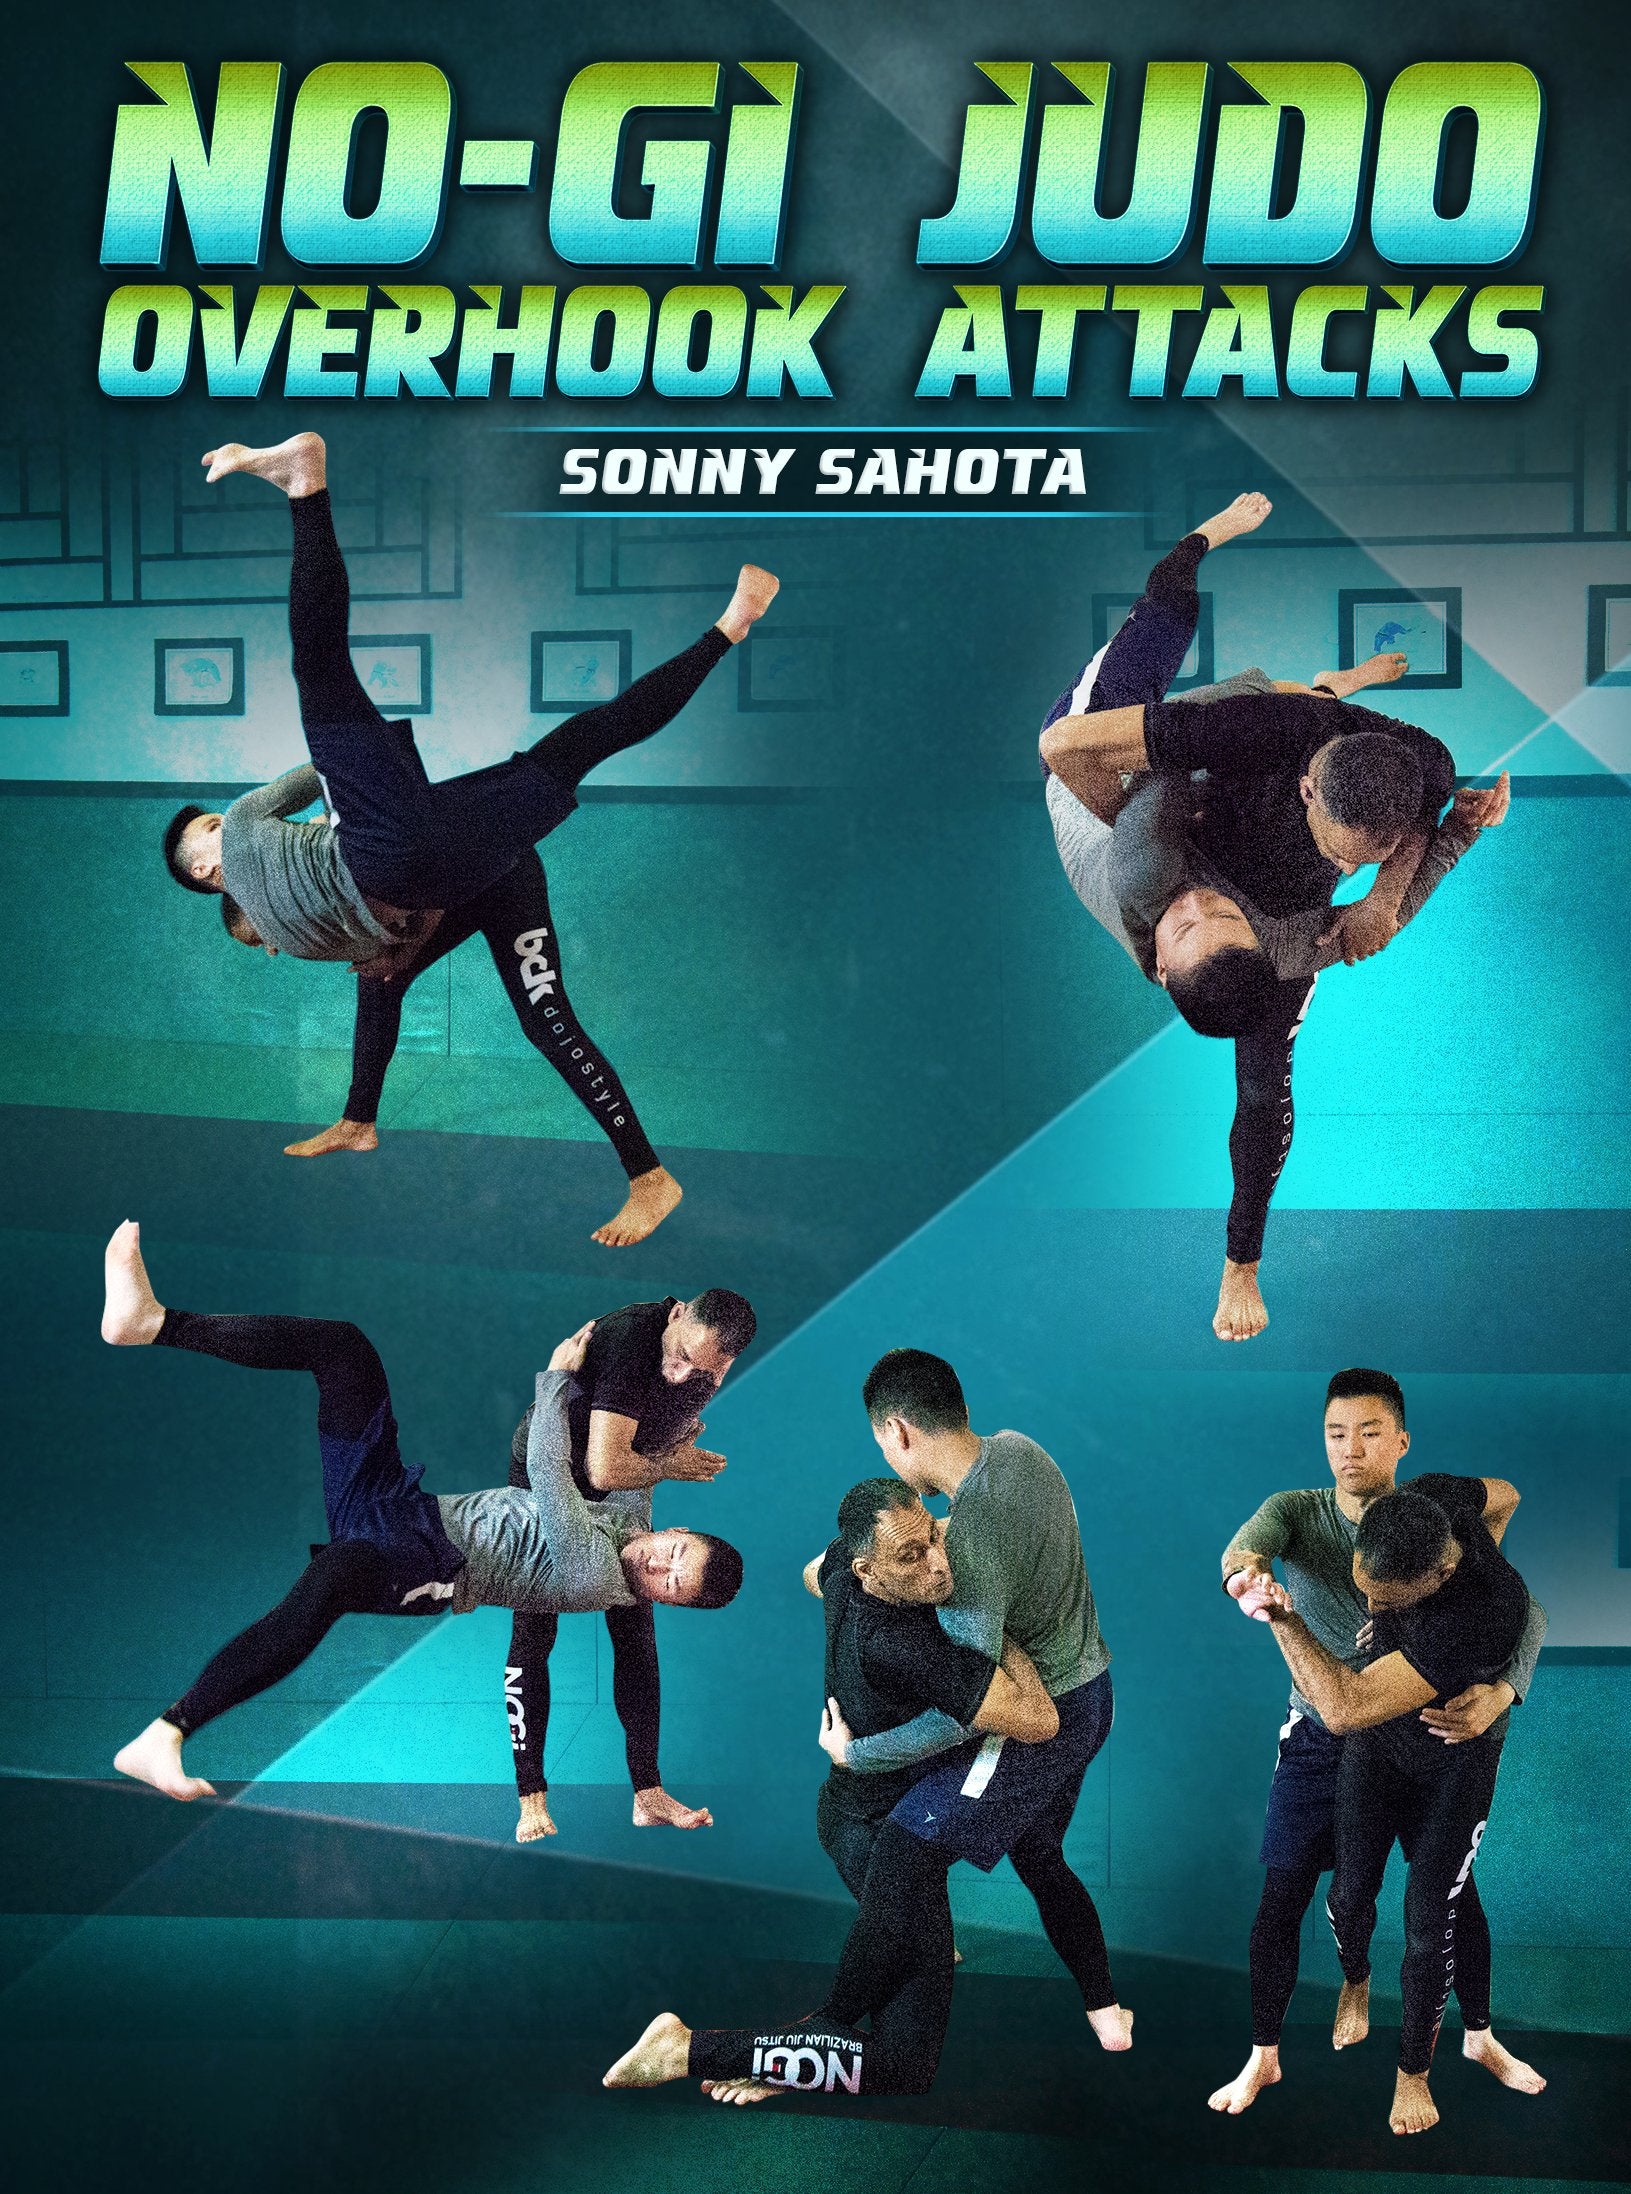 No Gi Judo Overhook Attacks by Sonny Sahota – Judo Fanatics